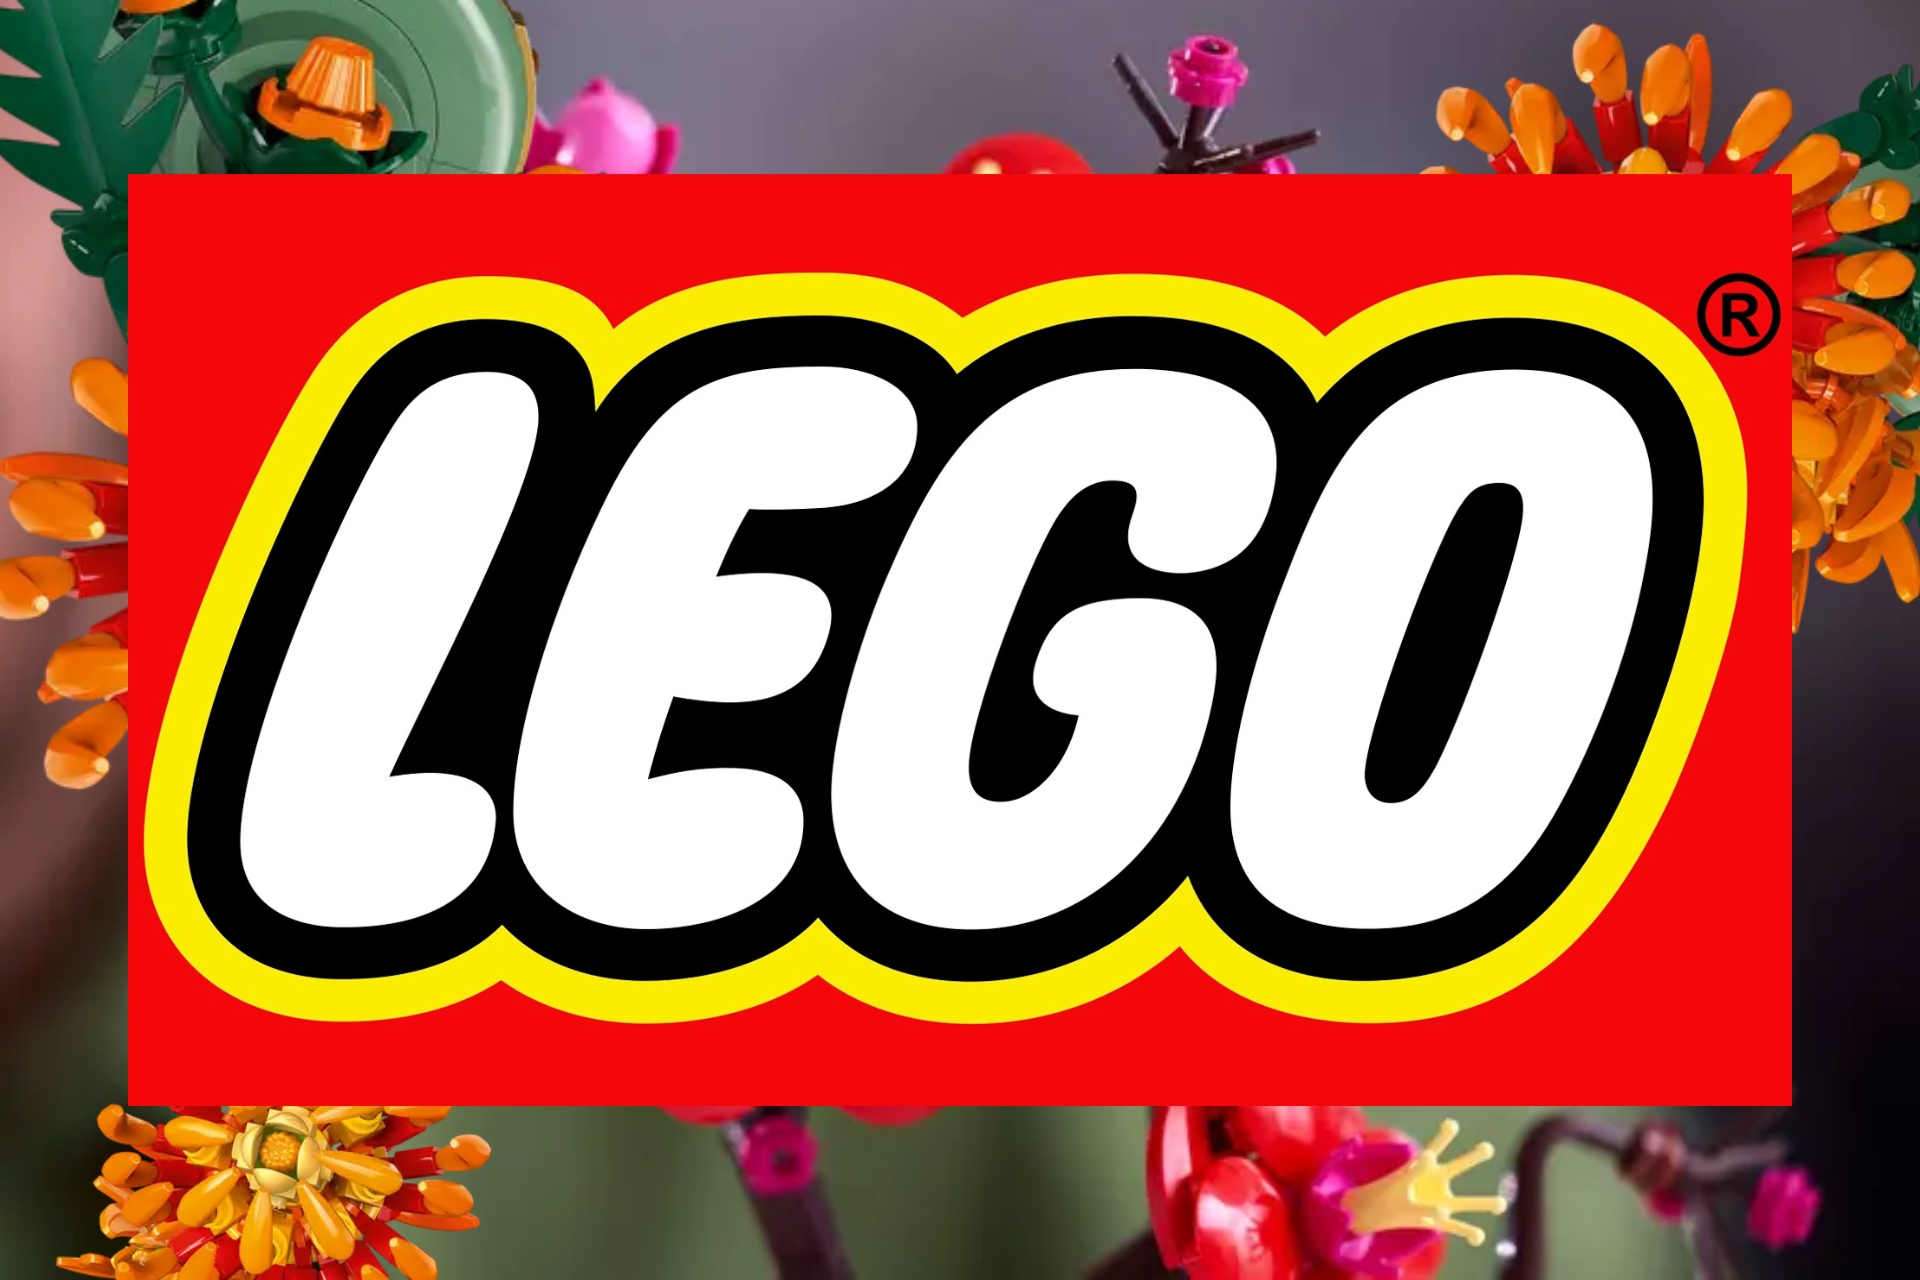 Nouveaux Sets Lego en Précommande : Chrysanthème et Fleurs de Prunier